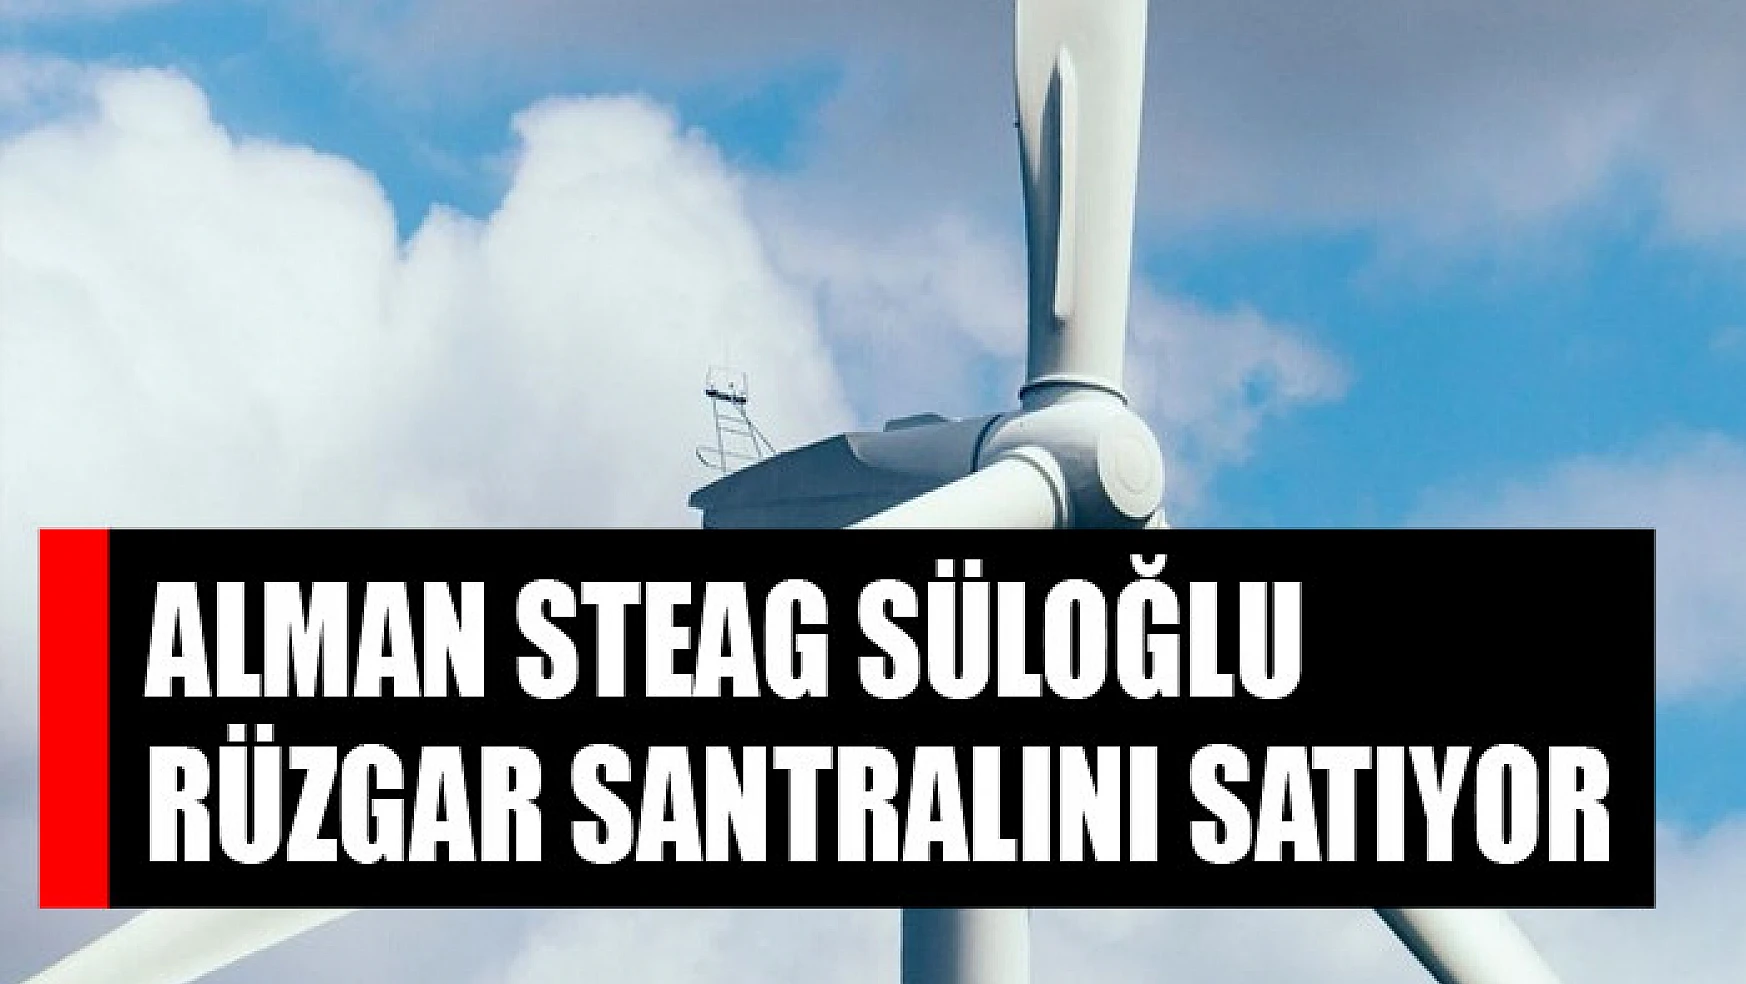 Alman Steag Süloğlu rüzgar santralını satıyor